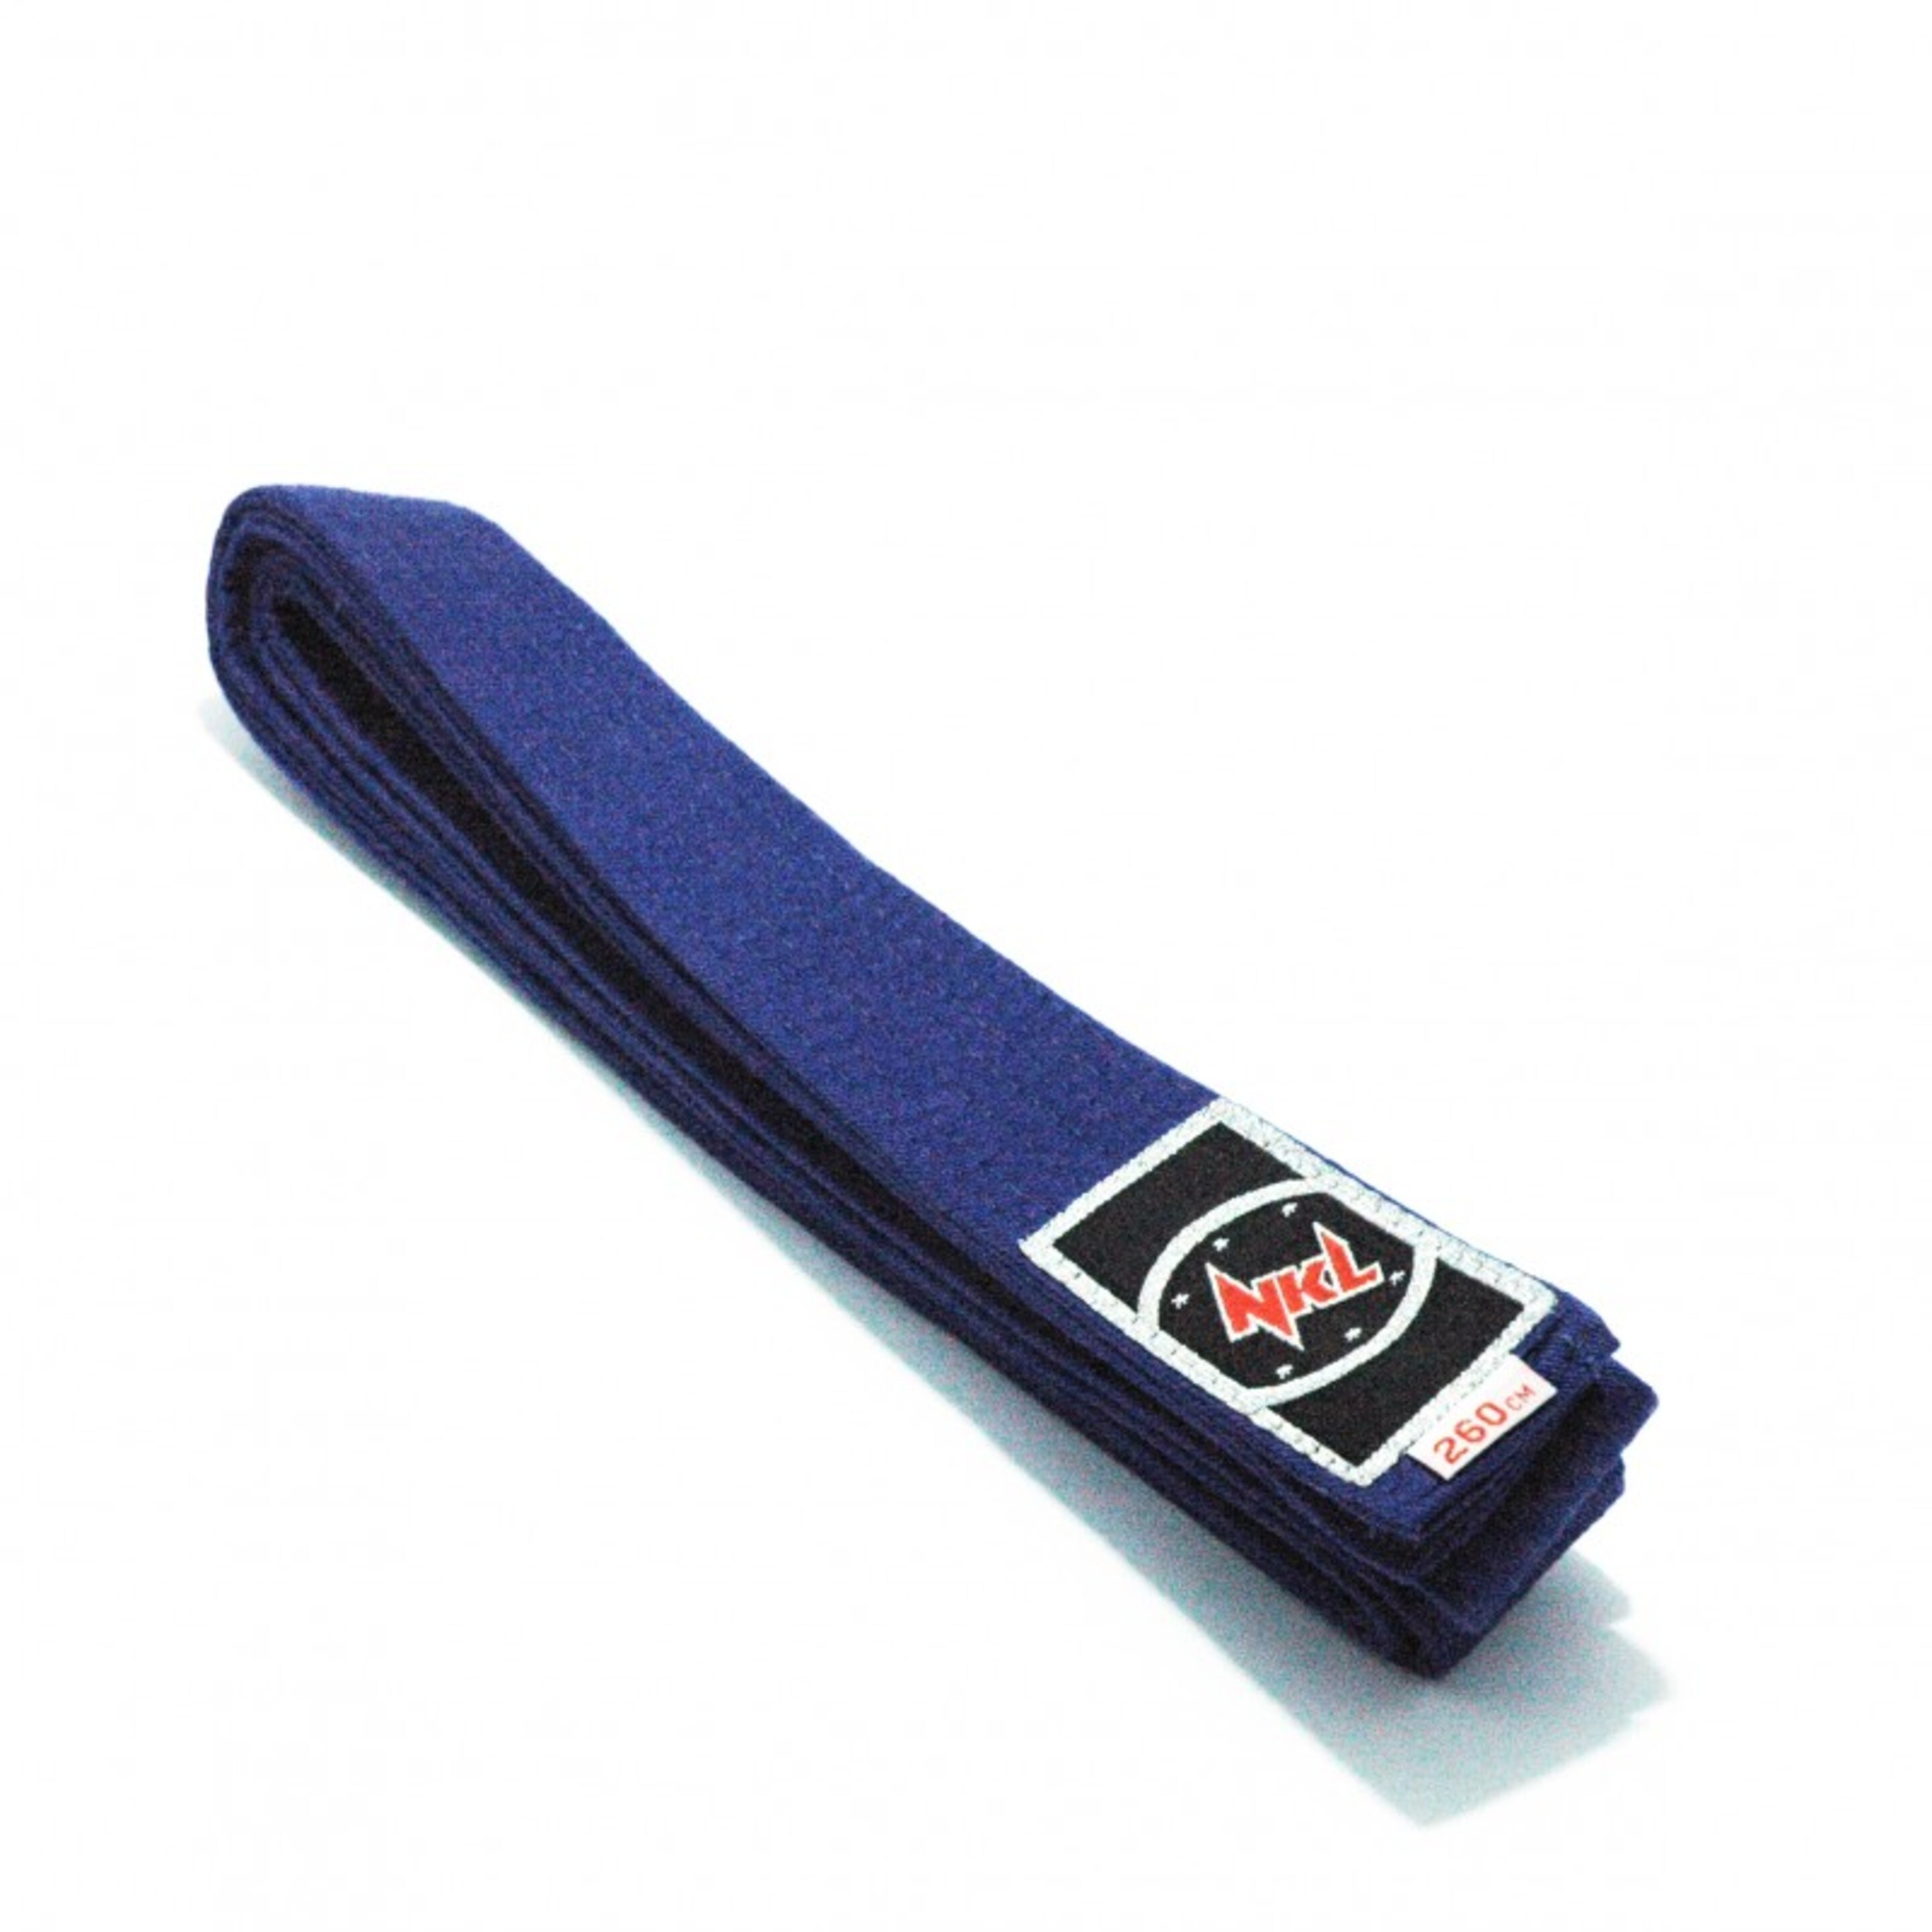 Cinturón Nkl Para Artes Marciales - azul - 